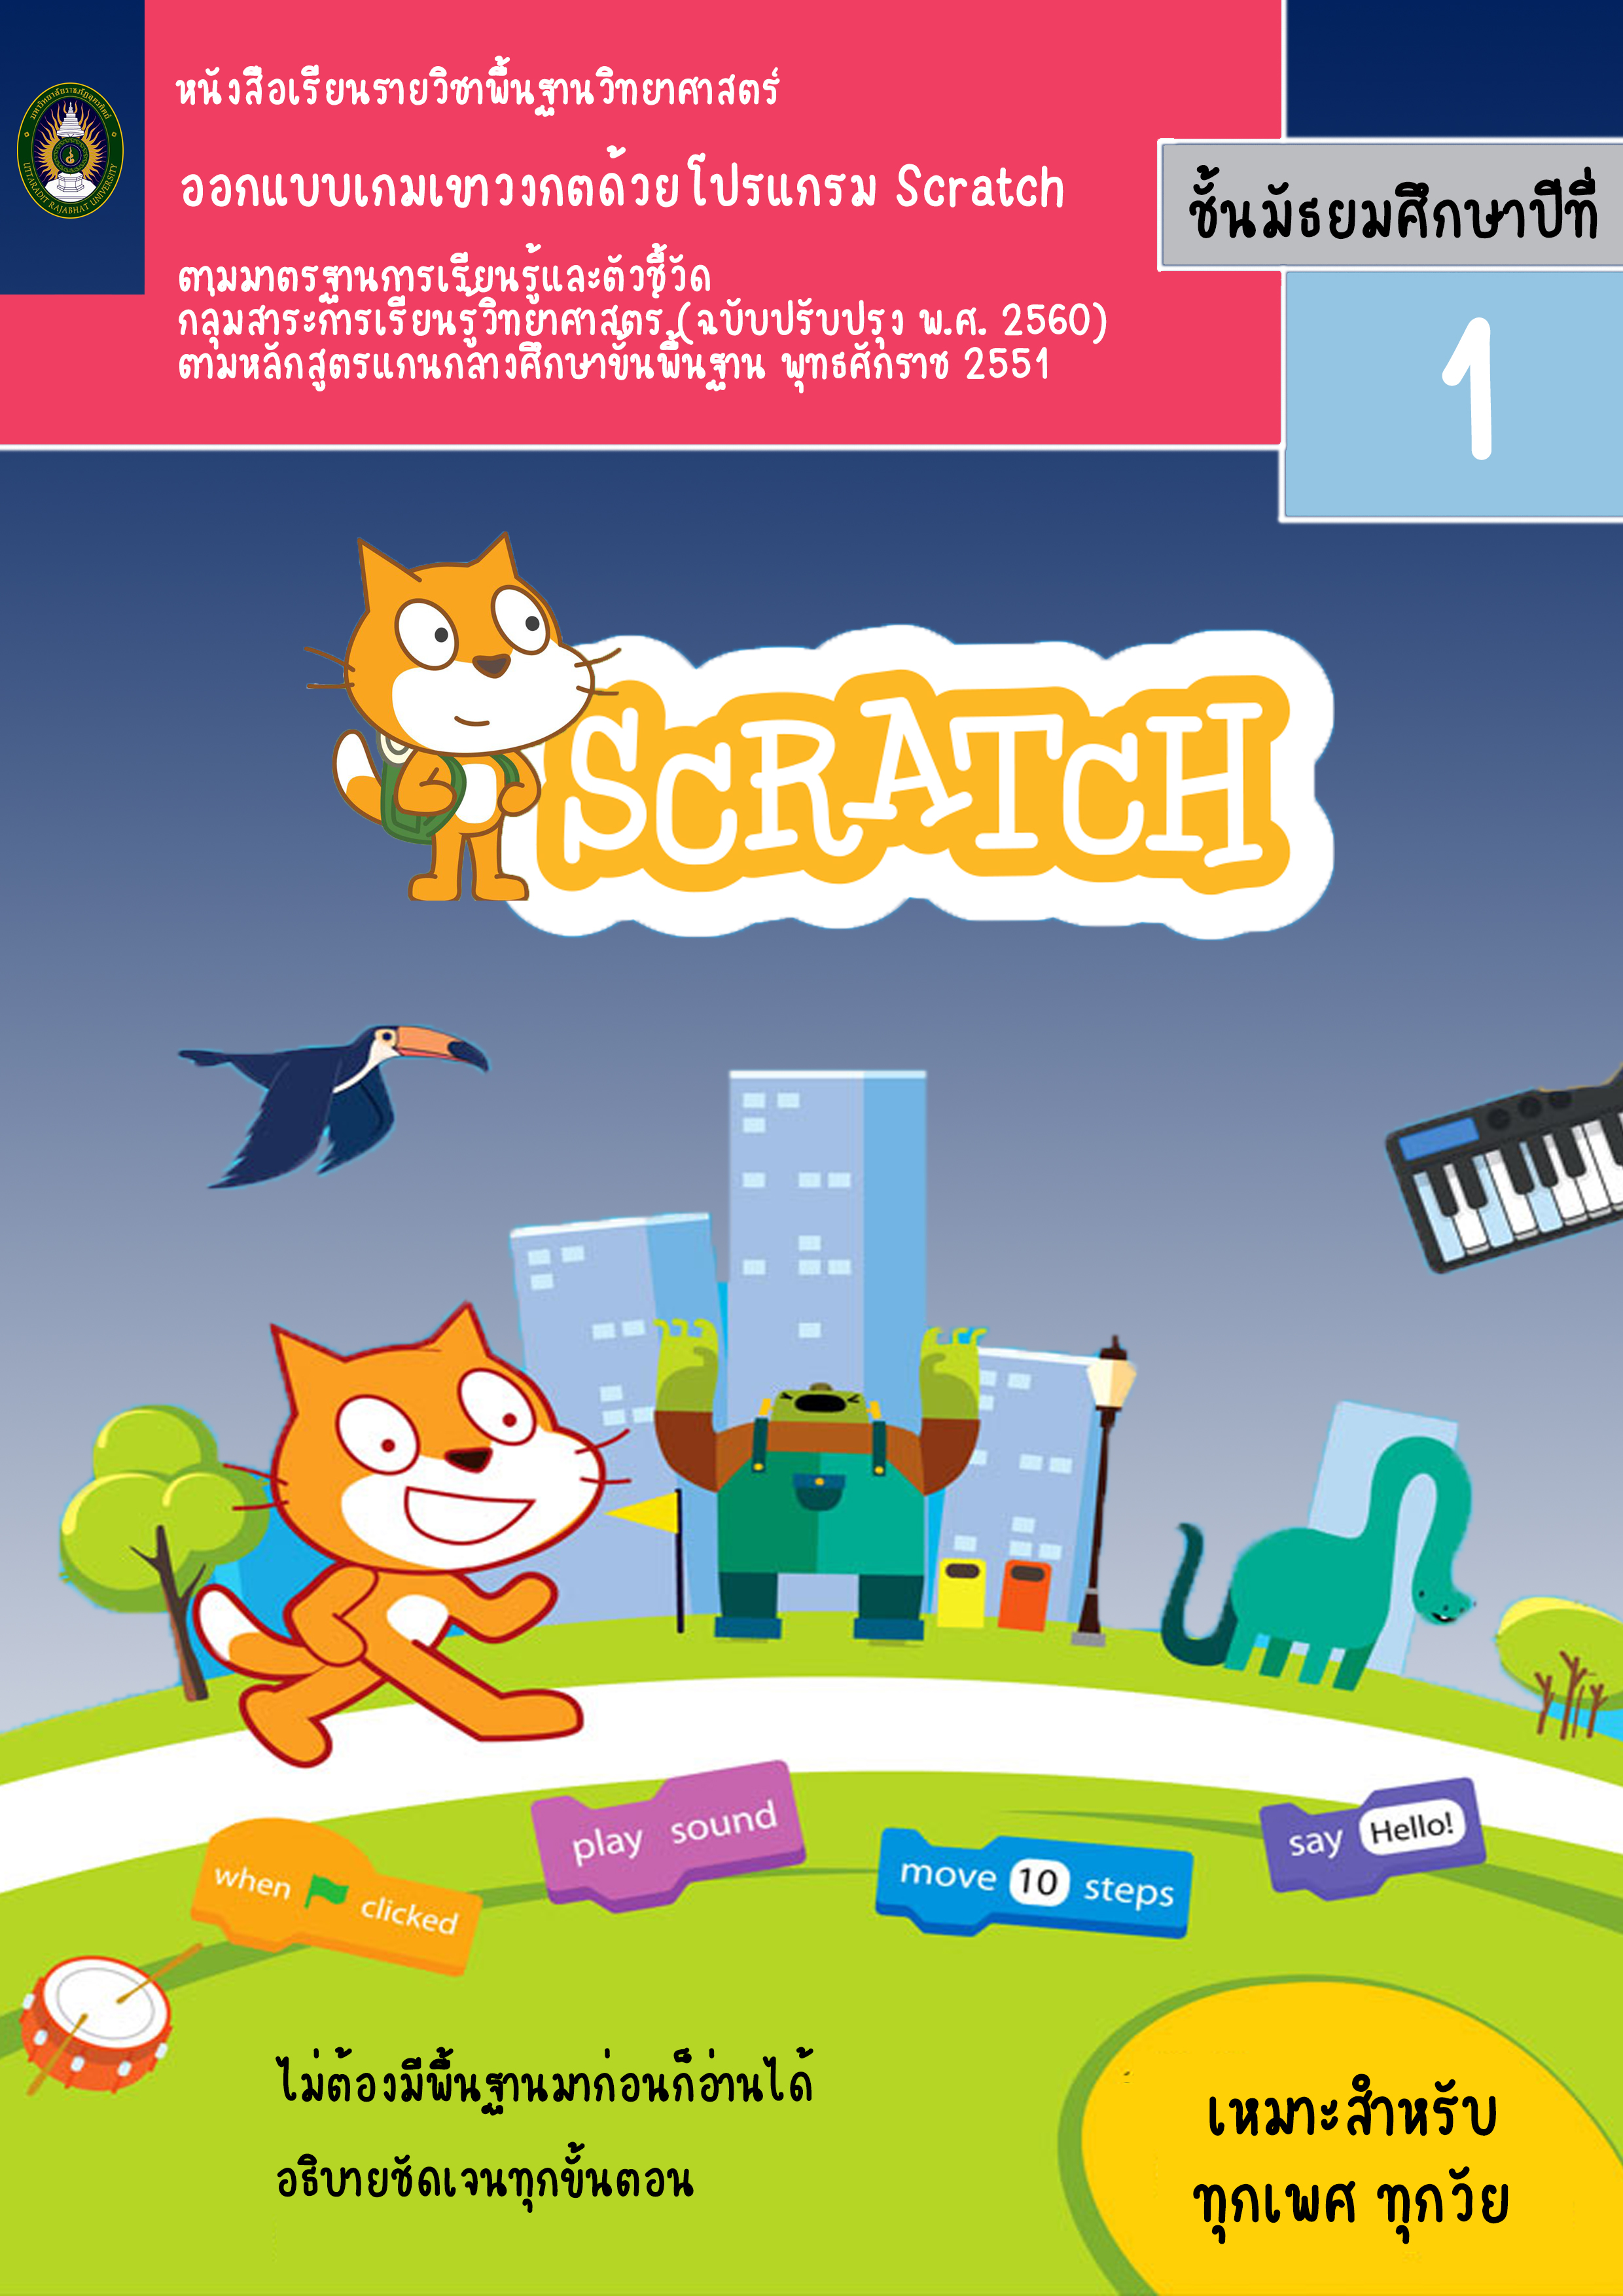 ออกแบบเกมเขาวงกตด้วยโปรแกรม Scratch